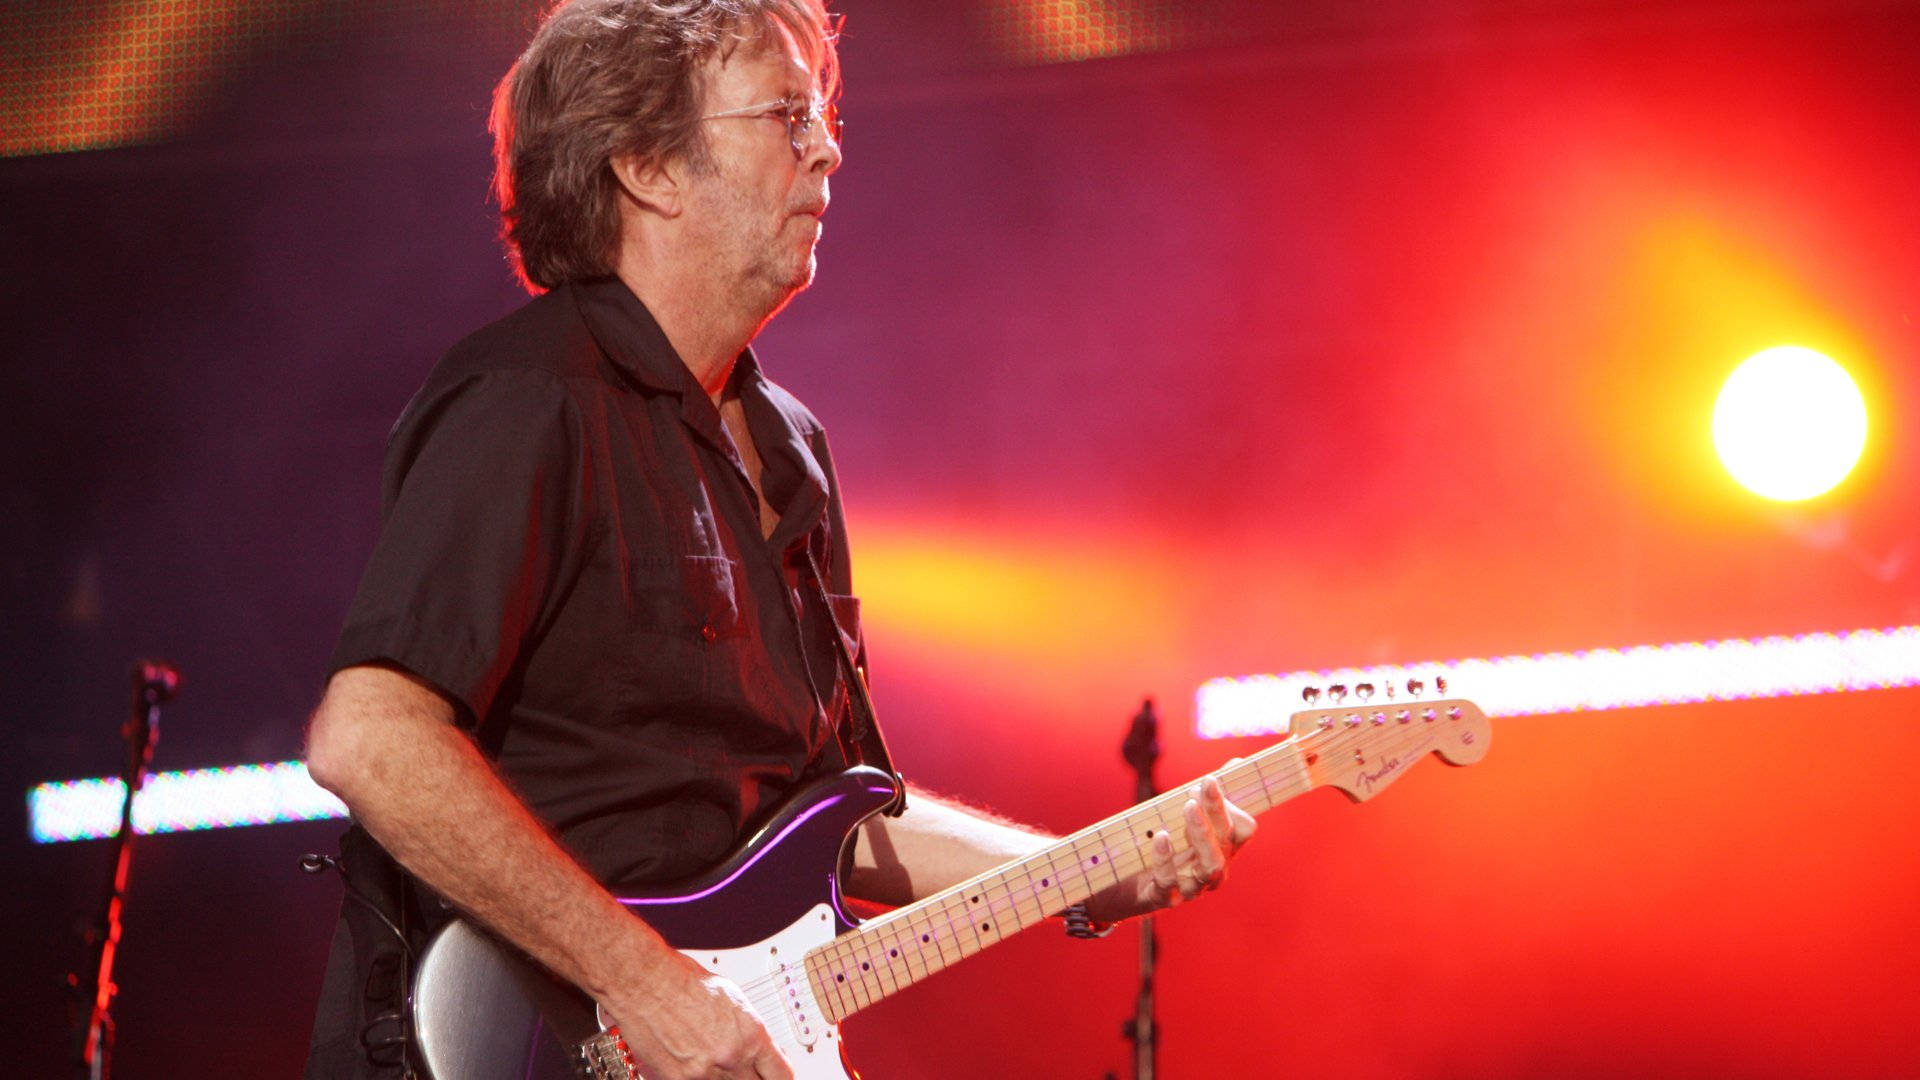 Eric Clapton Against Vibrant Orange Light Wallpaper